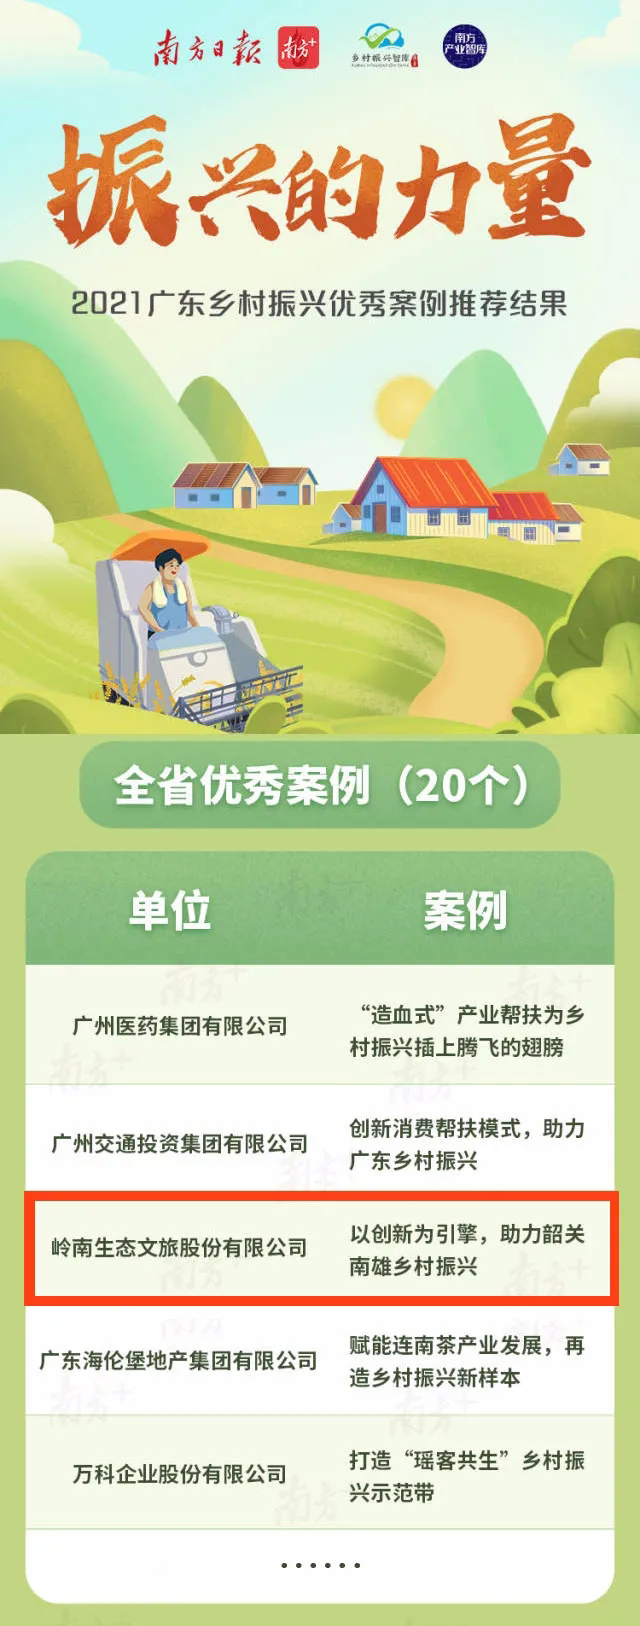 岭南股份获评“2021广东乡村振兴优秀案例”